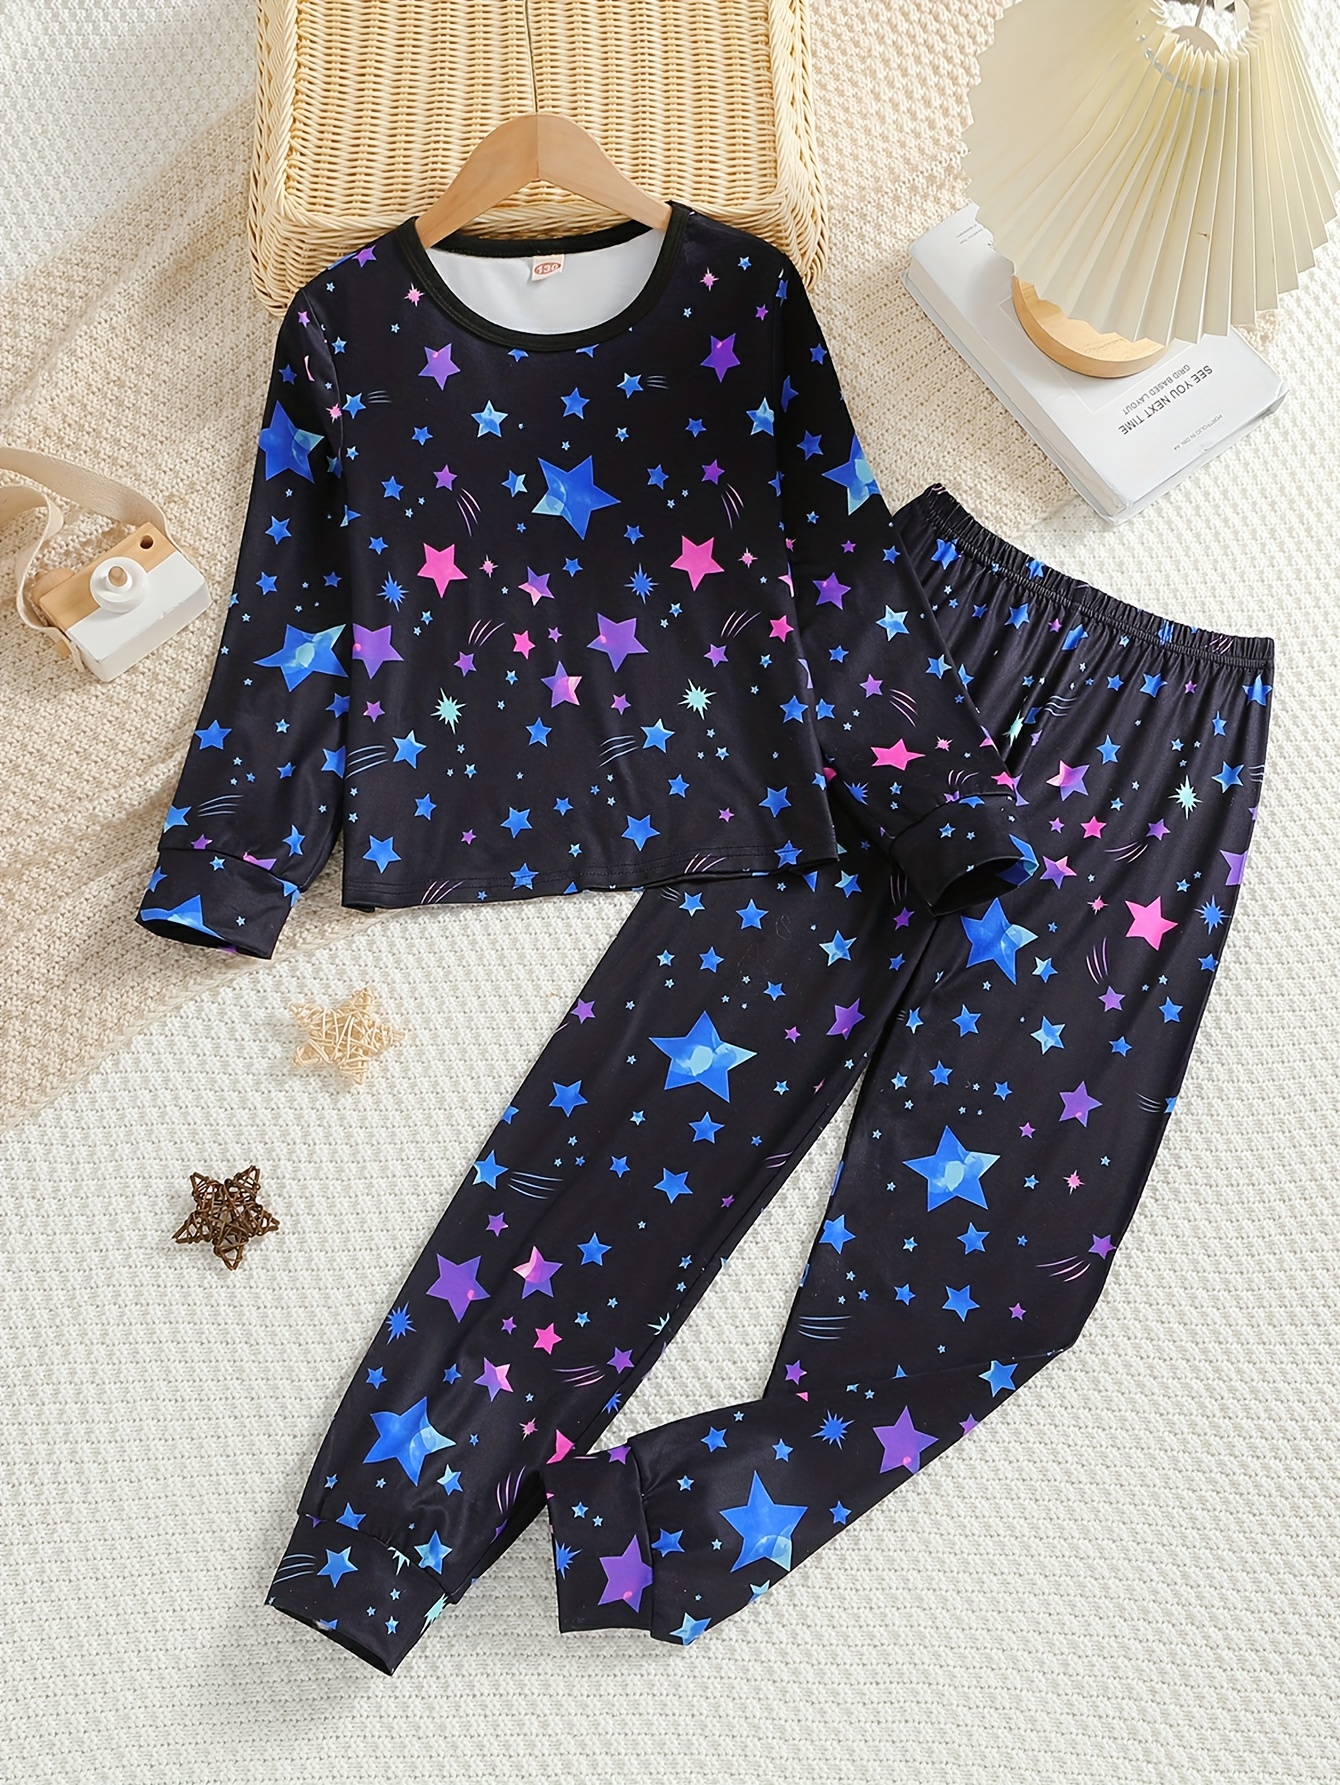 Hello Kitty Girls Pajama Pants and Sleep Shirt Sets 4 Piece PJ Top and  Bottom Sleepwear Set for Girls Pajamas for Kids